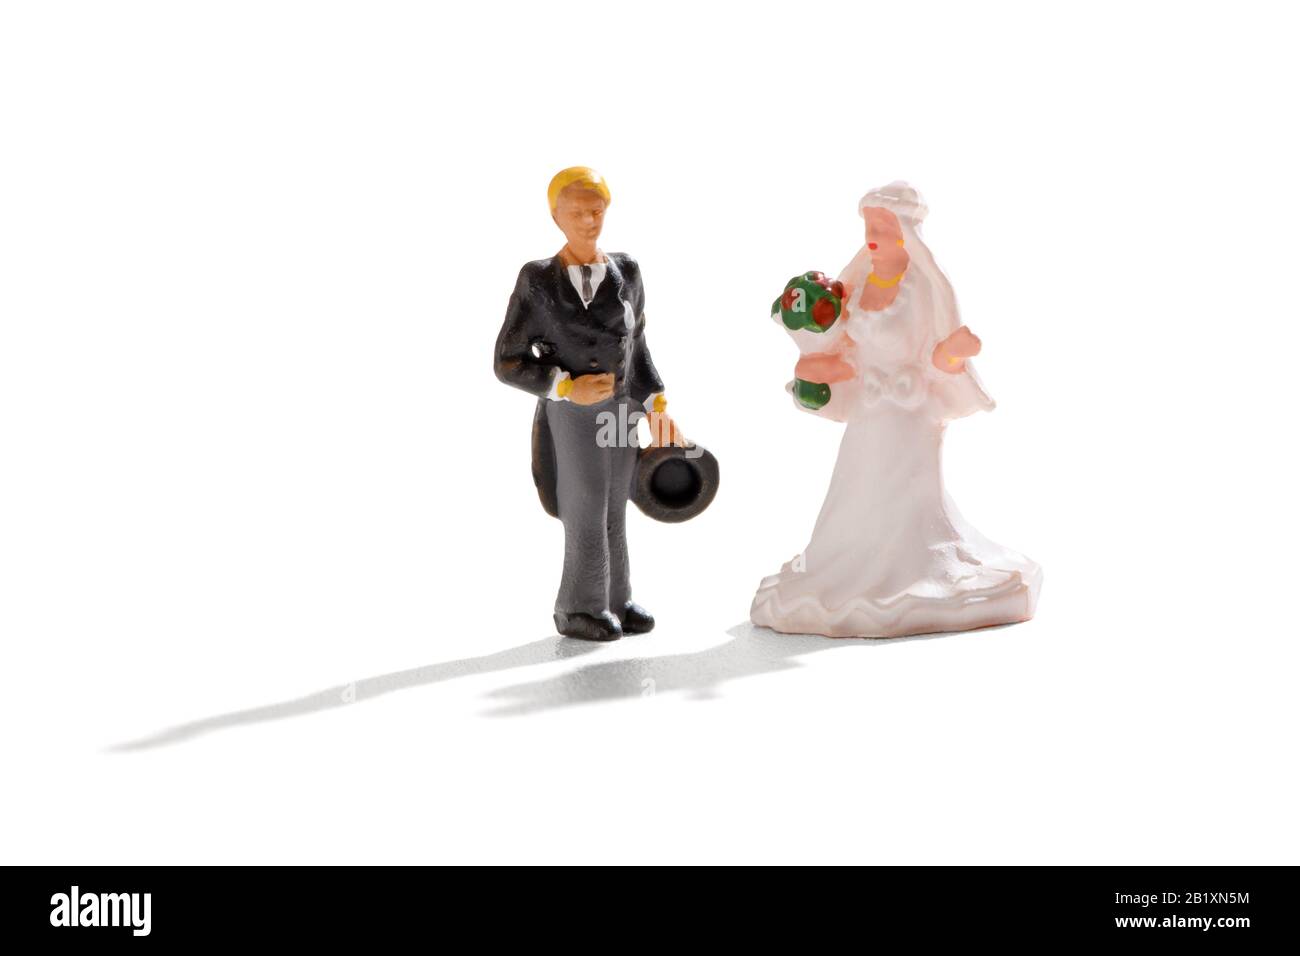 Boda en miniatura con una novia y un novio en la parte superior del sombrero y las colas y una bata blanca de pie juntos en blanco Foto de stock